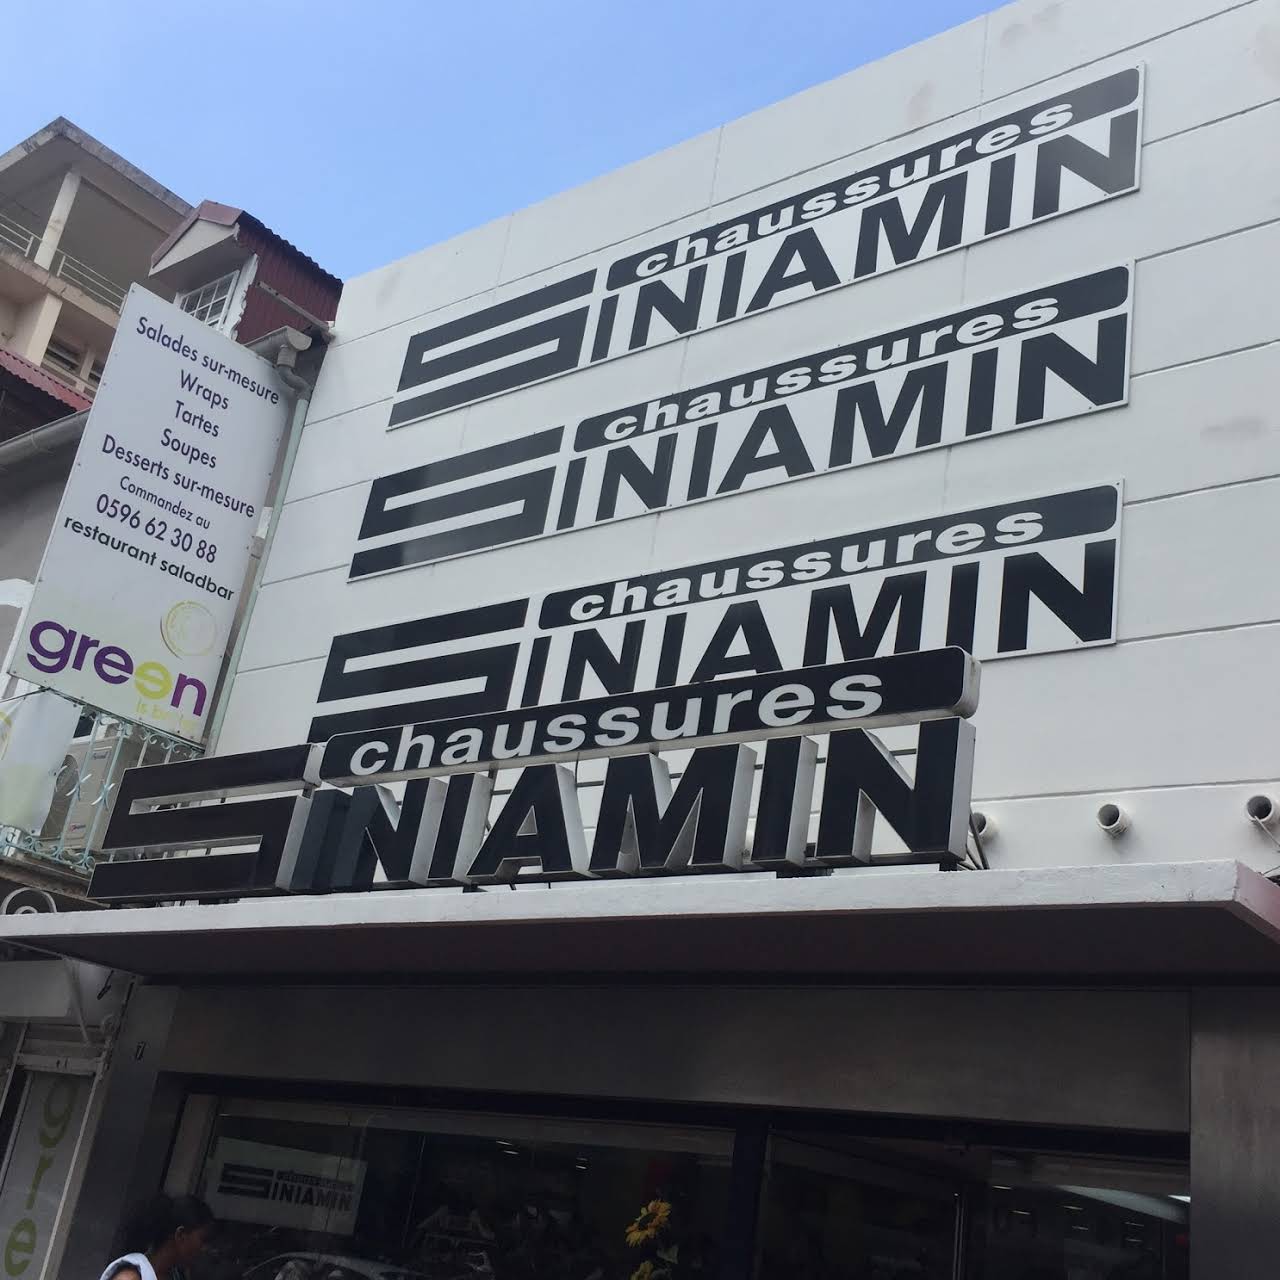     Ouvert depuis 1899, le magasin Chaussures Siniamin ferme définitivement ses portes 

